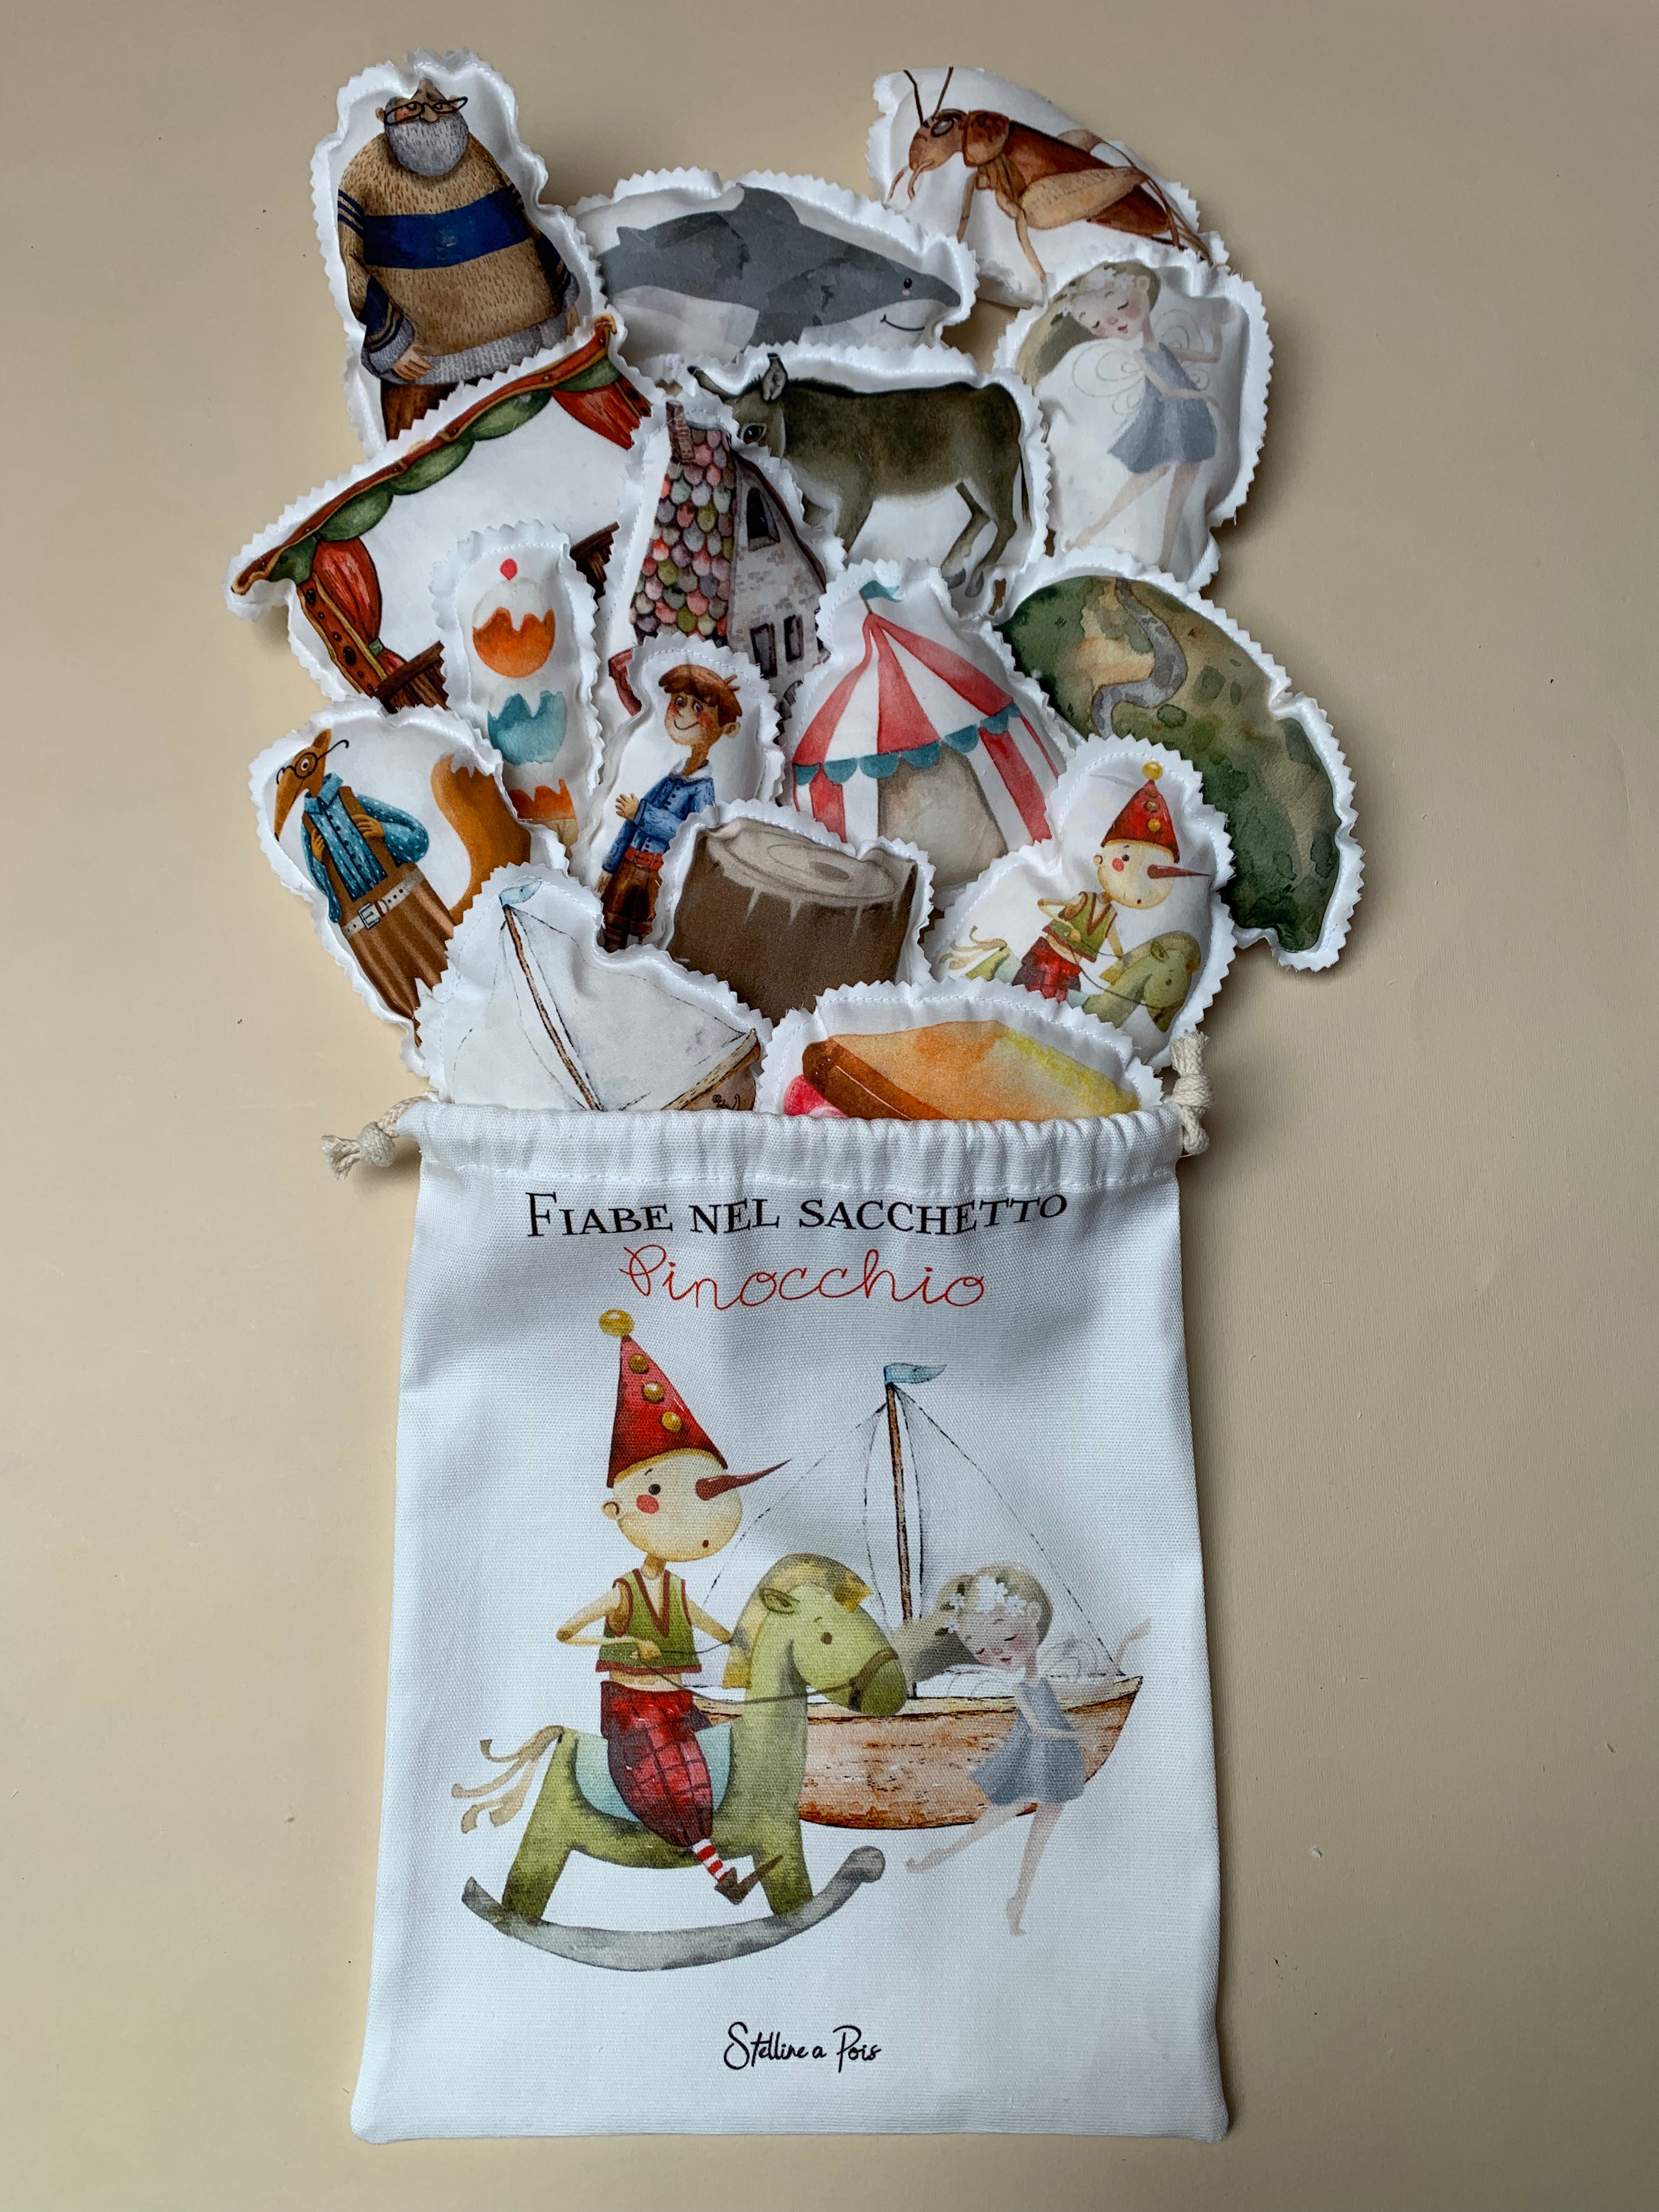 Gioco educativo: la fiaba nel sacchetto "Pinocchio"